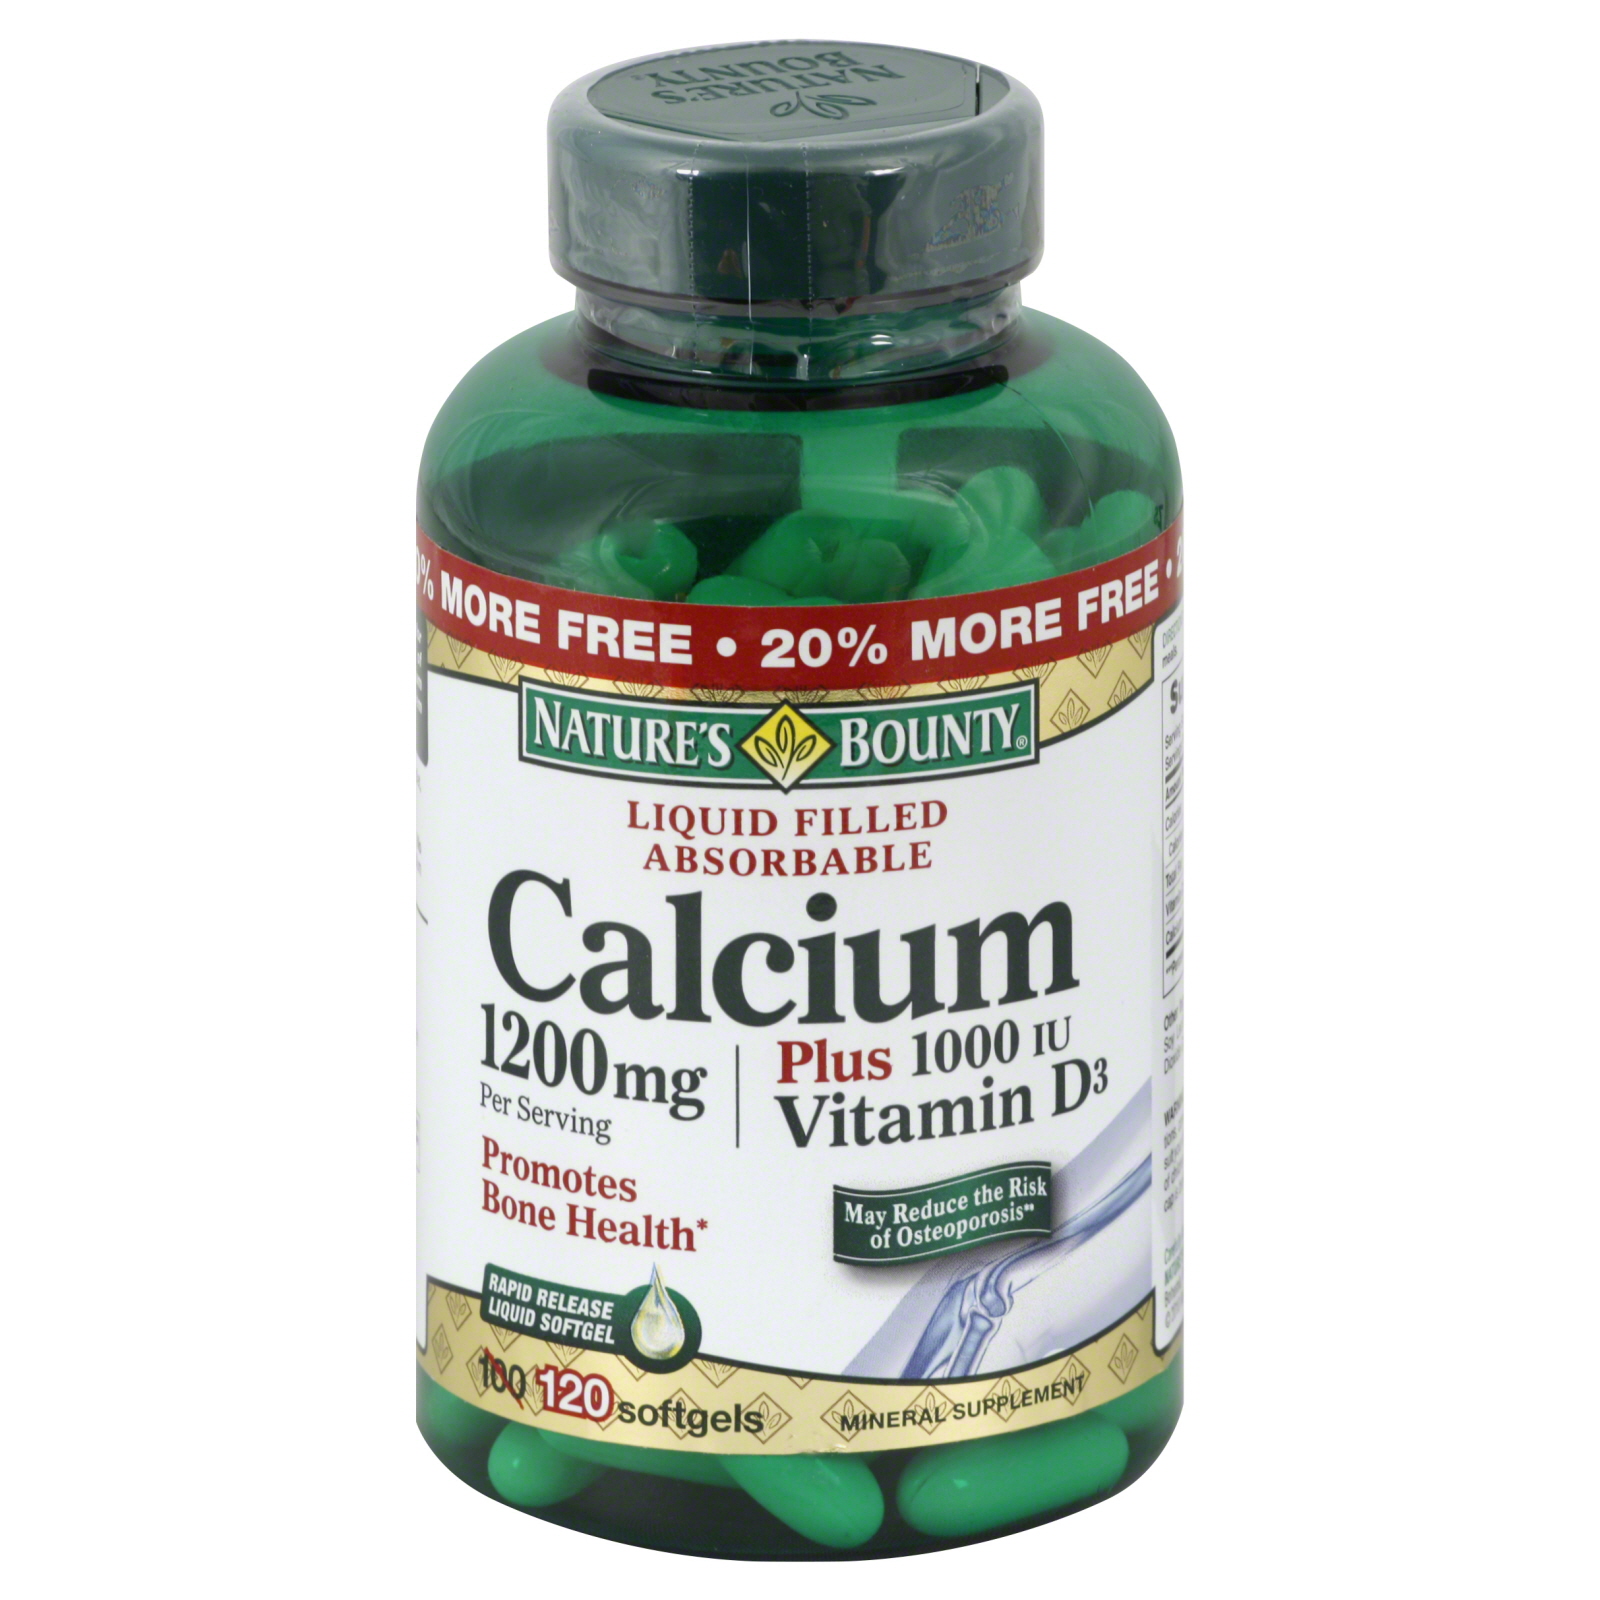 Calcium, 1200 mg, Plus Vitamin D3, 1000 IU, Rapid Release Liquid Softgels, 120 softgels